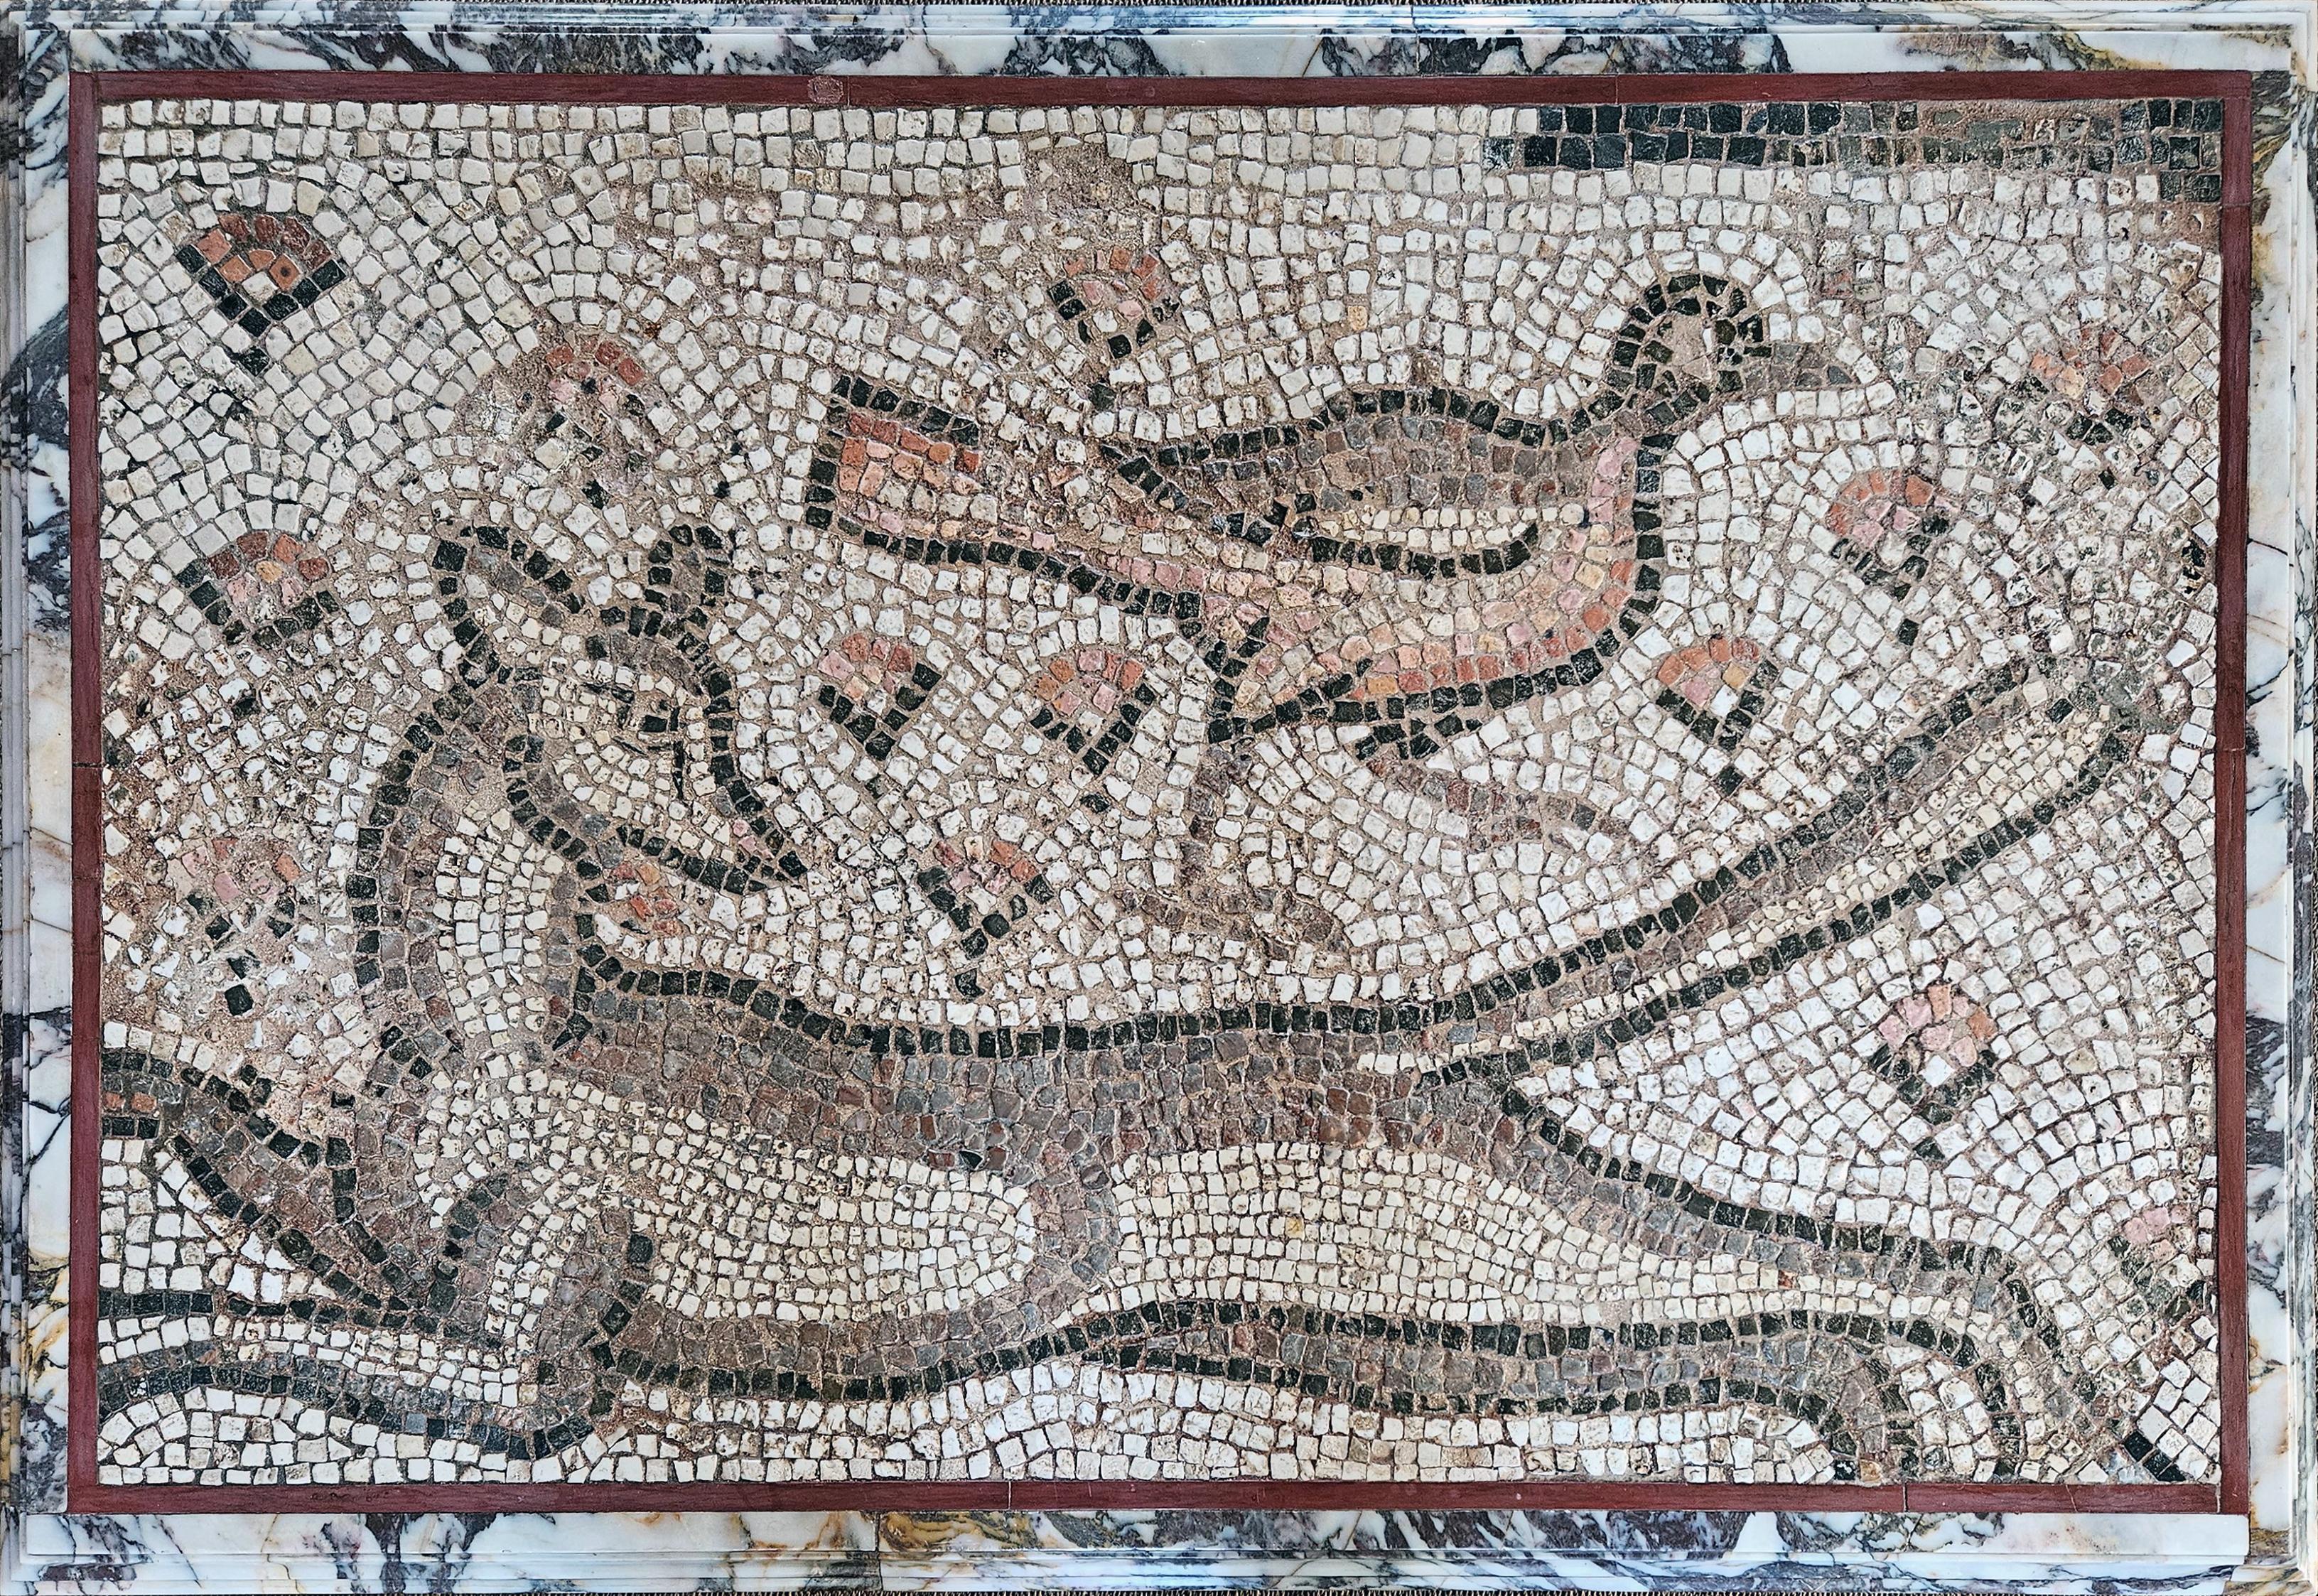 Mosaik, das zwei Tiere (einen Hund und eine Henne) darstellt und als Tisch montiert ist.

Naher Osten (Apamea?), 2. Jahrhundert n. Chr., römische Zeit
Marmorguss im Jahr 2015 hinzugefügt

Provenienz : Galerie Rive Gauche, Baron F. Rolin ;